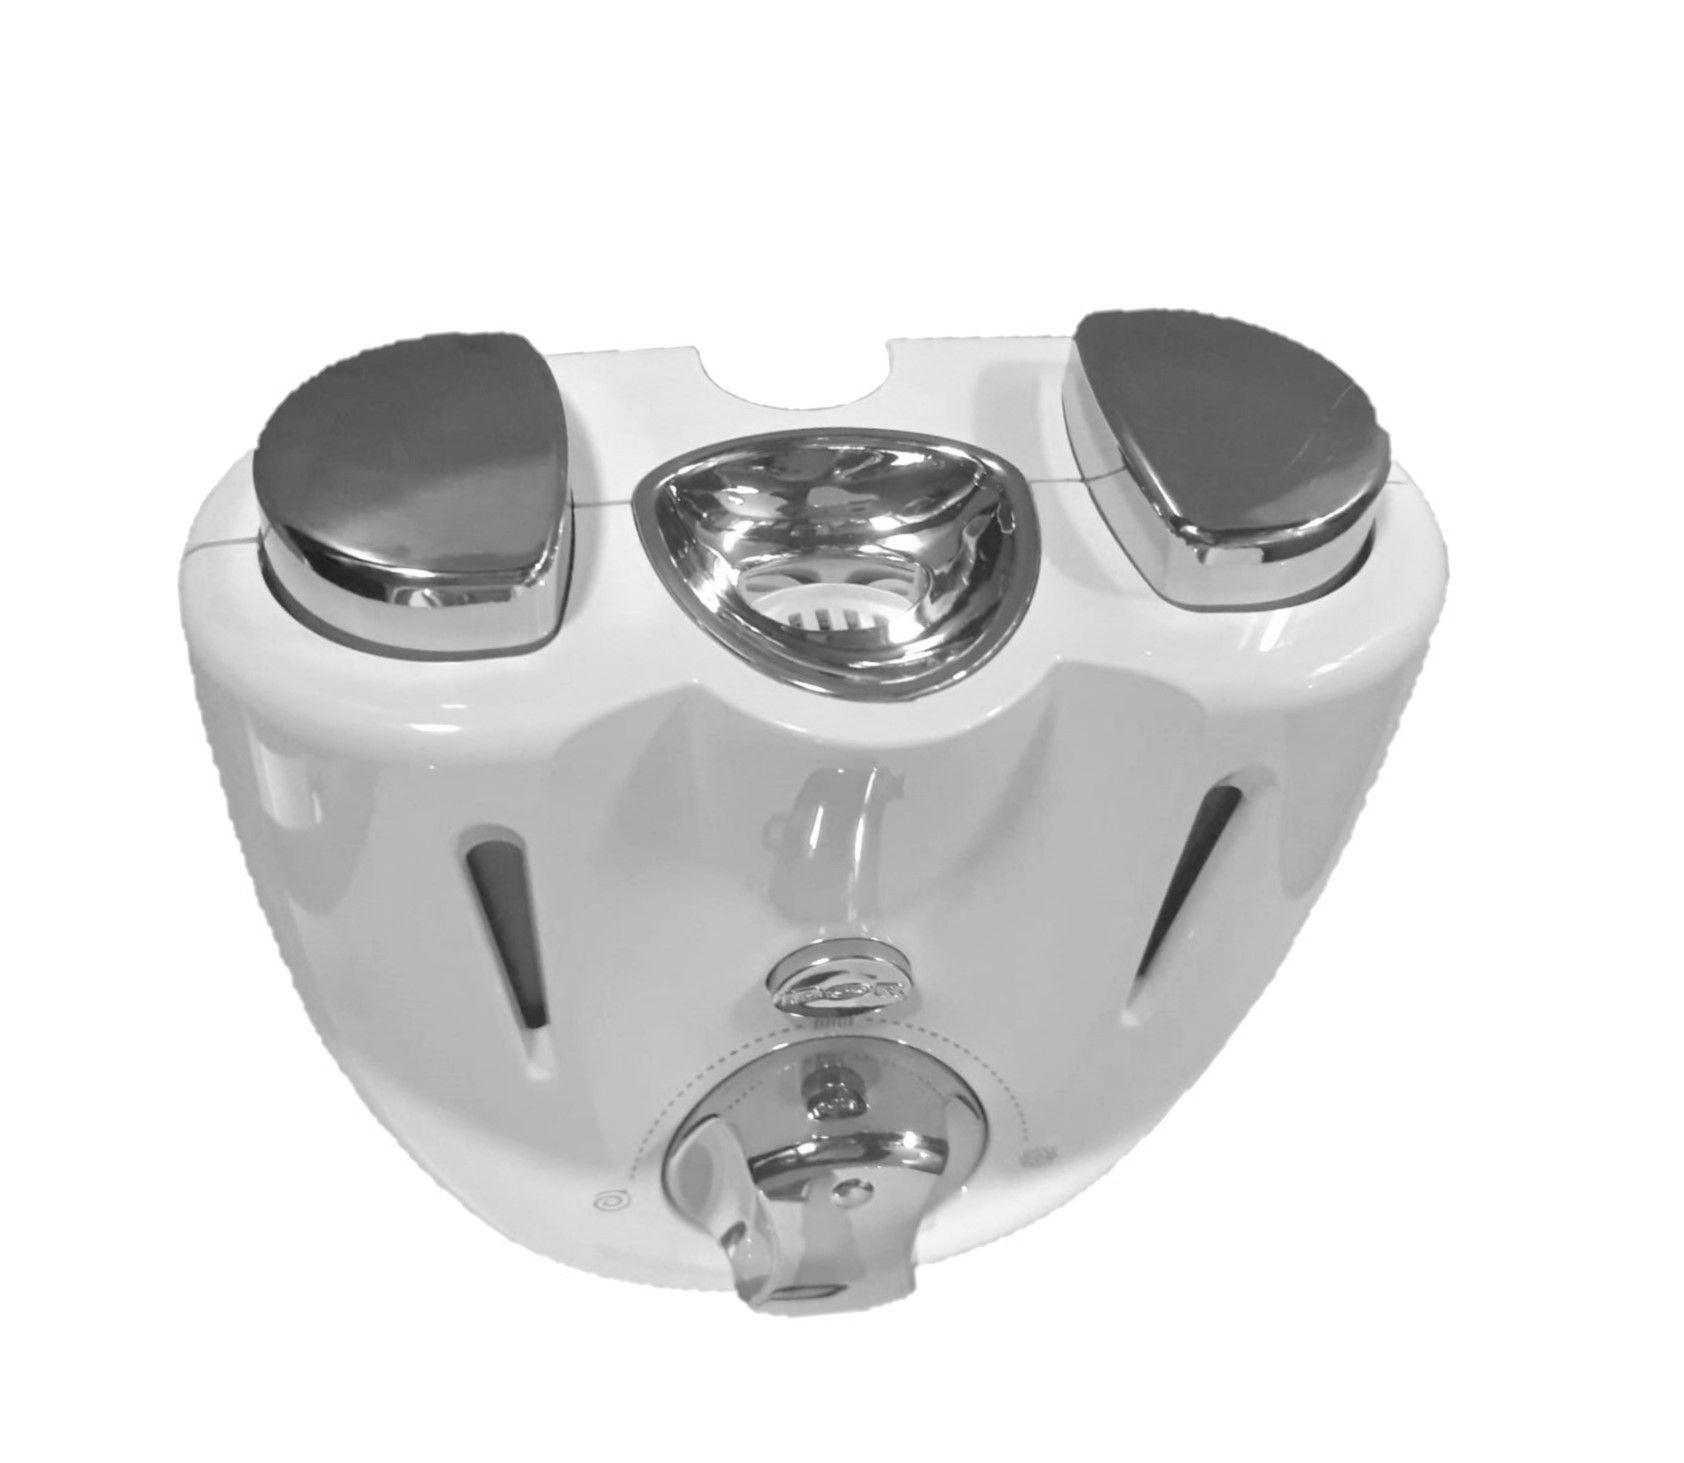 Idor Myfive Universal Threeway White/07 emolsionatore multiplo per vasca - doccia bianco con mensole e pulsantiera cromata